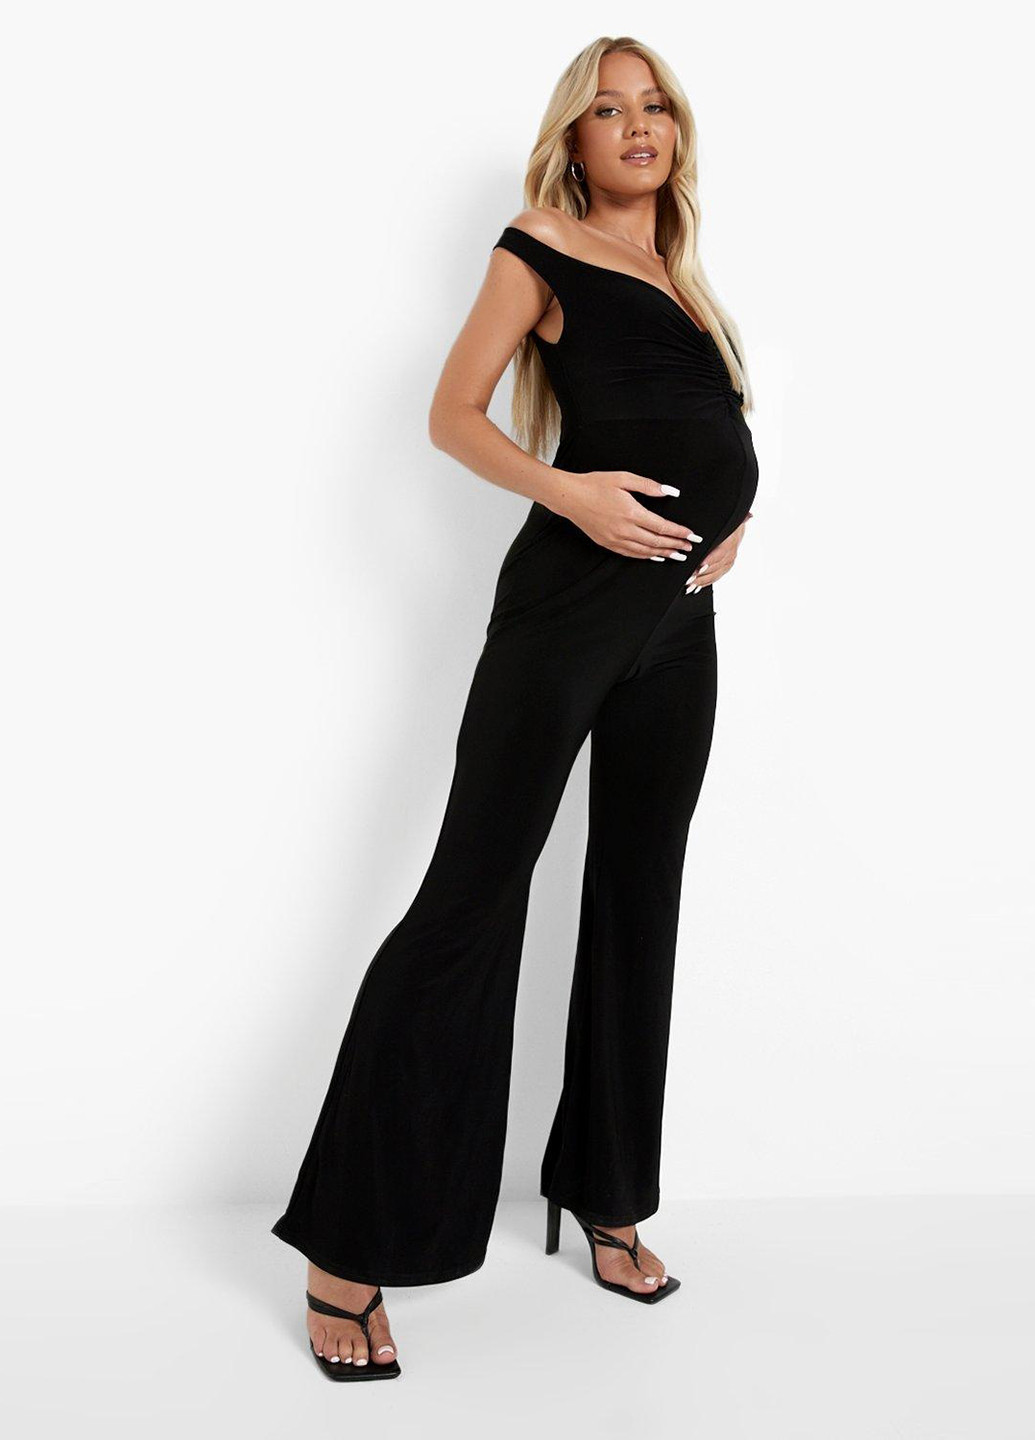 Комбинезон для беременных Boohoo комбинезон-брюки однотонный чёрный кэжуал полиэстер, трикотаж